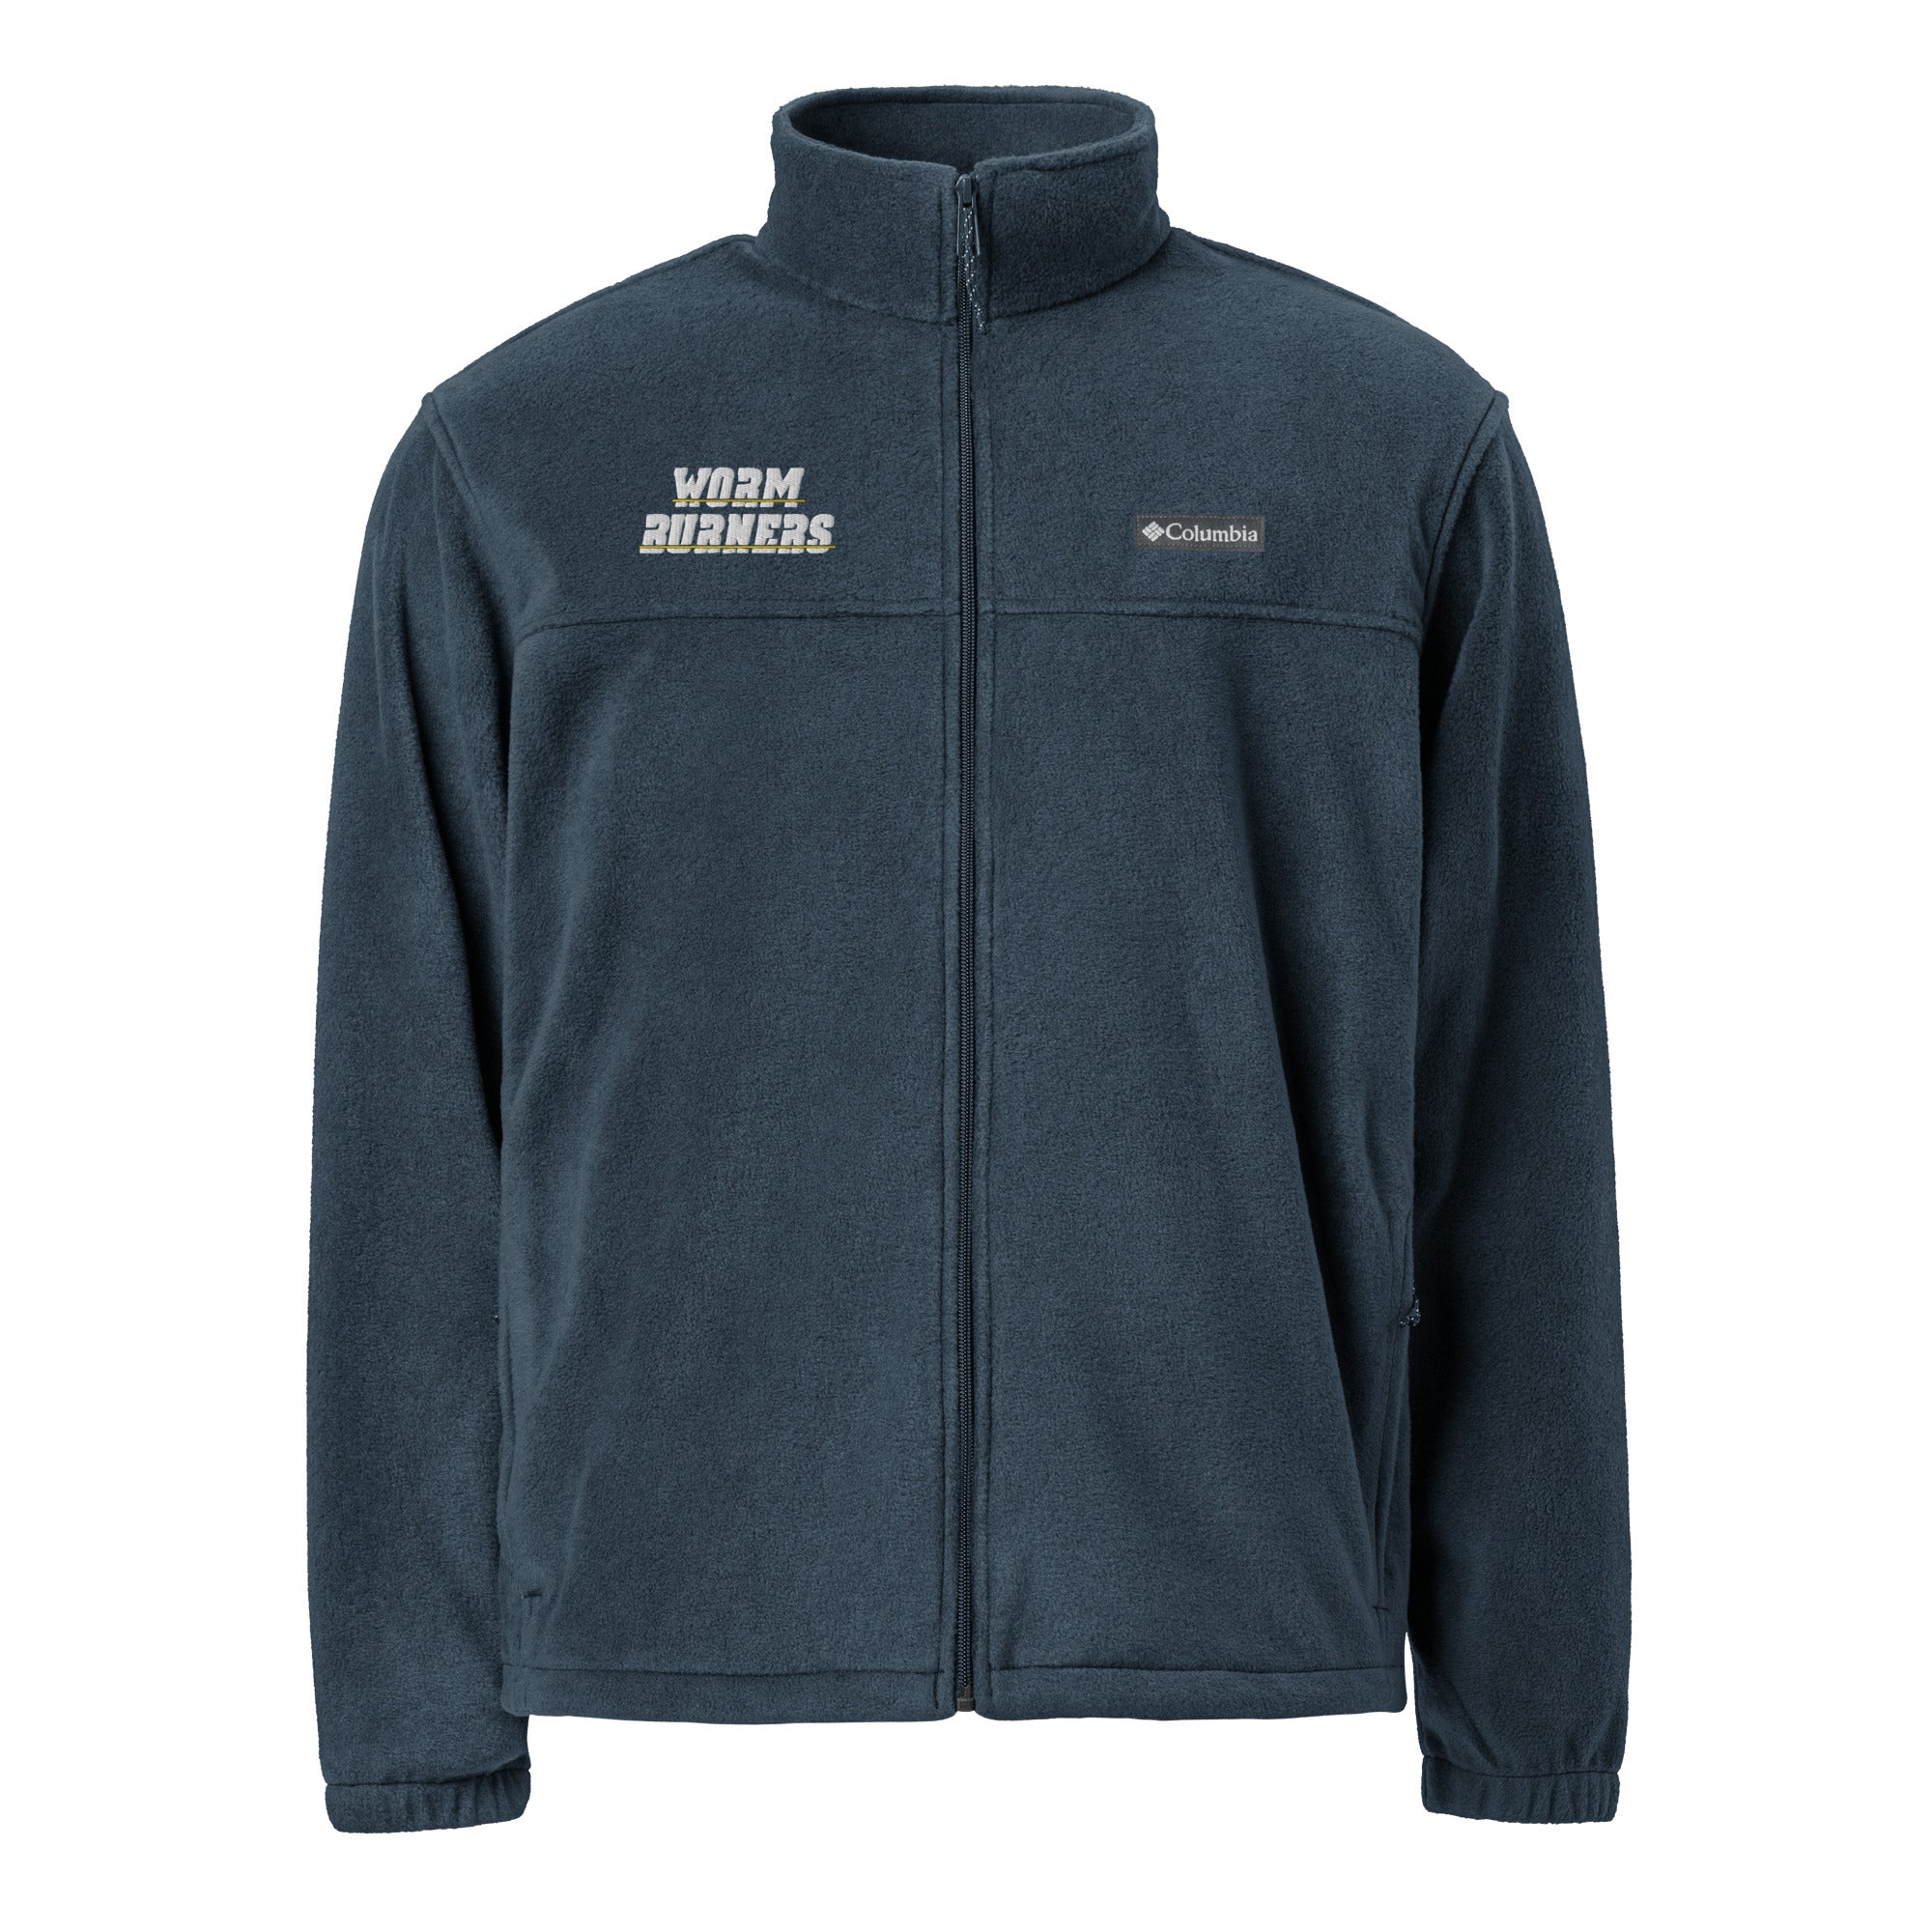 Worm Burners Unisex Columbia fleece jacket